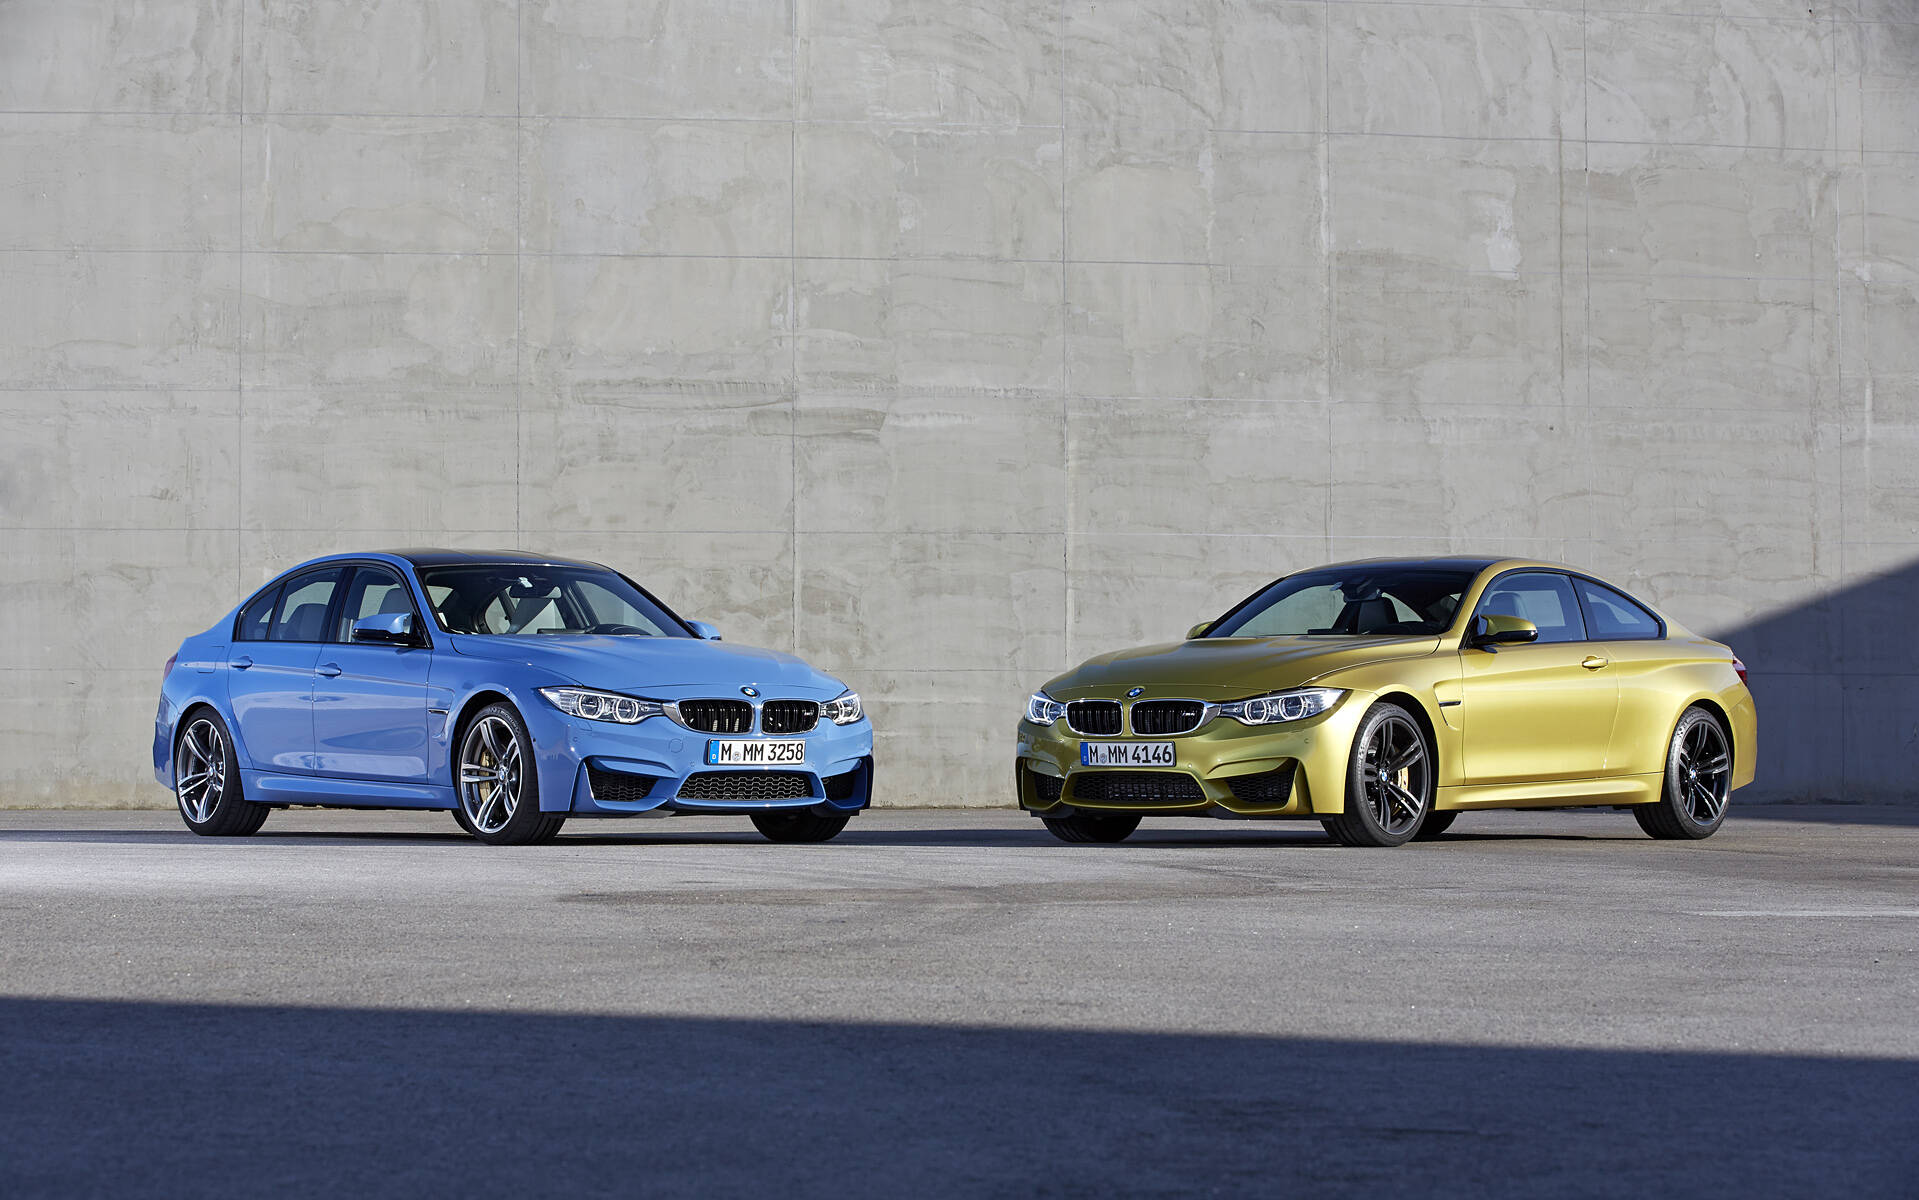 50 ans de voitures BMW M en images 527888-50-ans-de-voitures-bmw-m-en-images